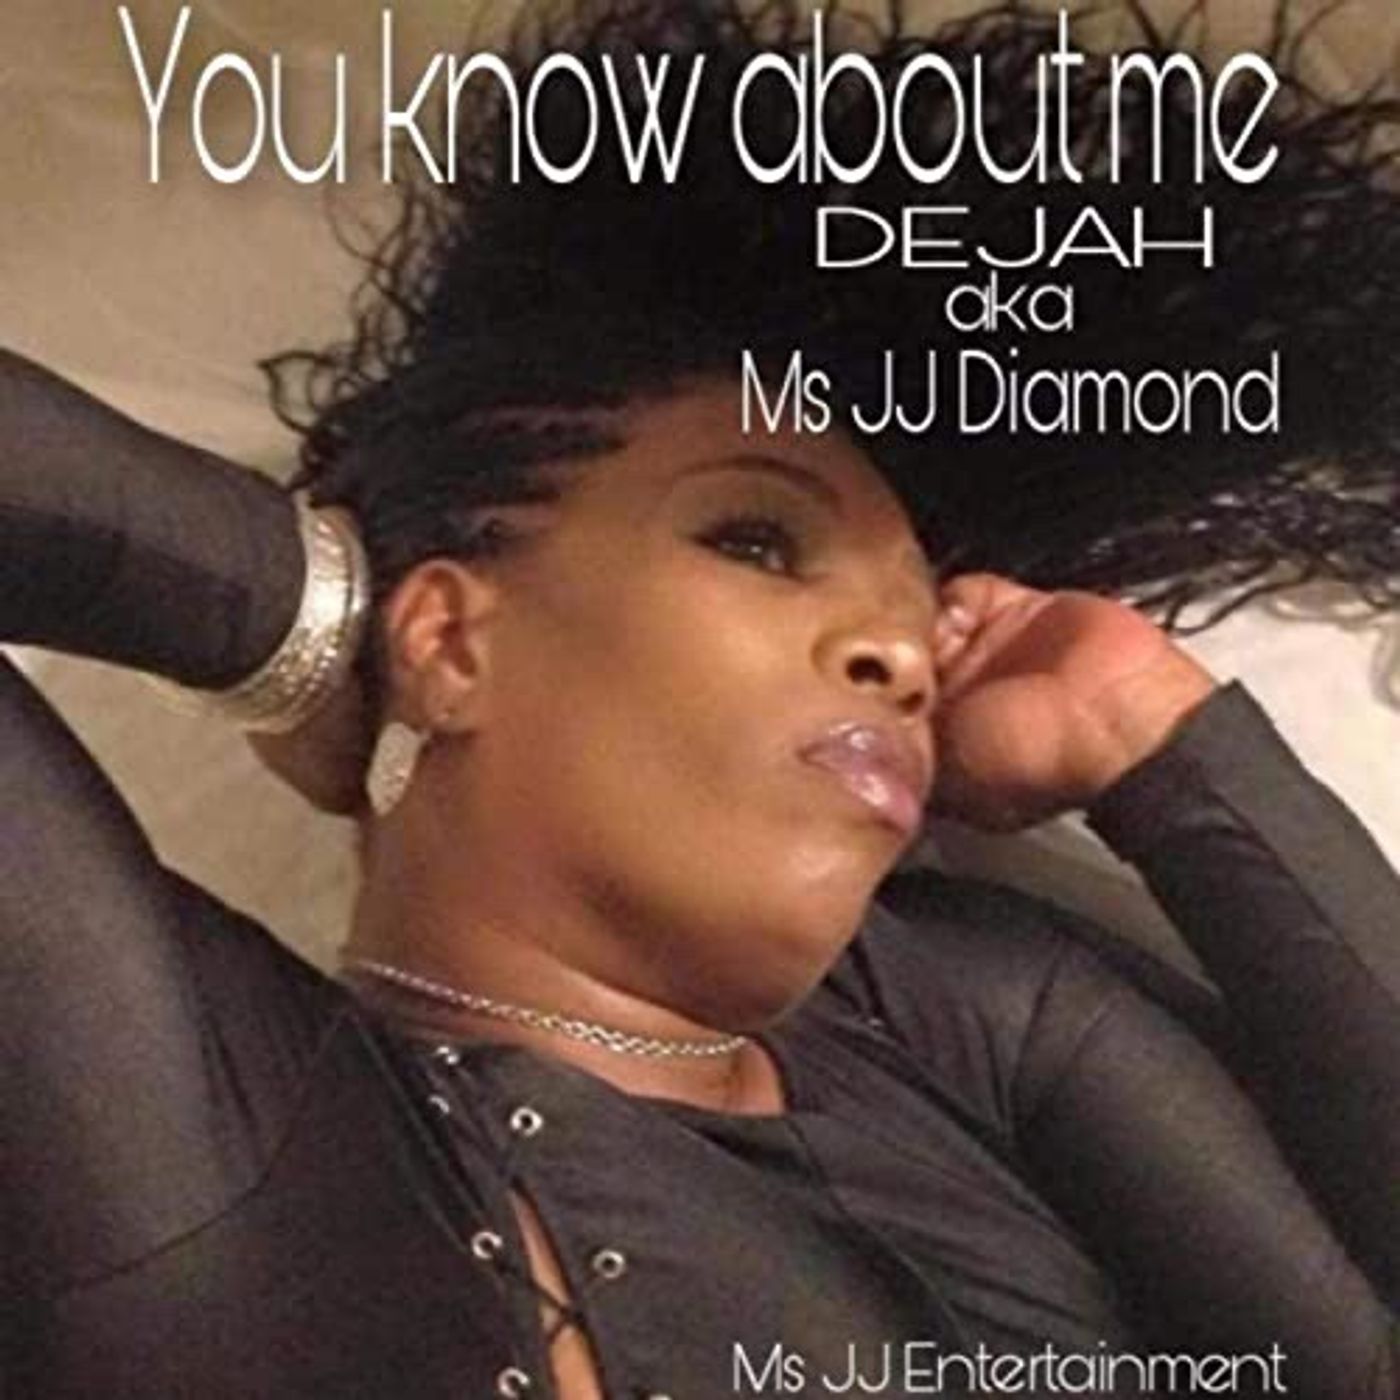 You know about Me - Dejah aka Ms JJ Diamond